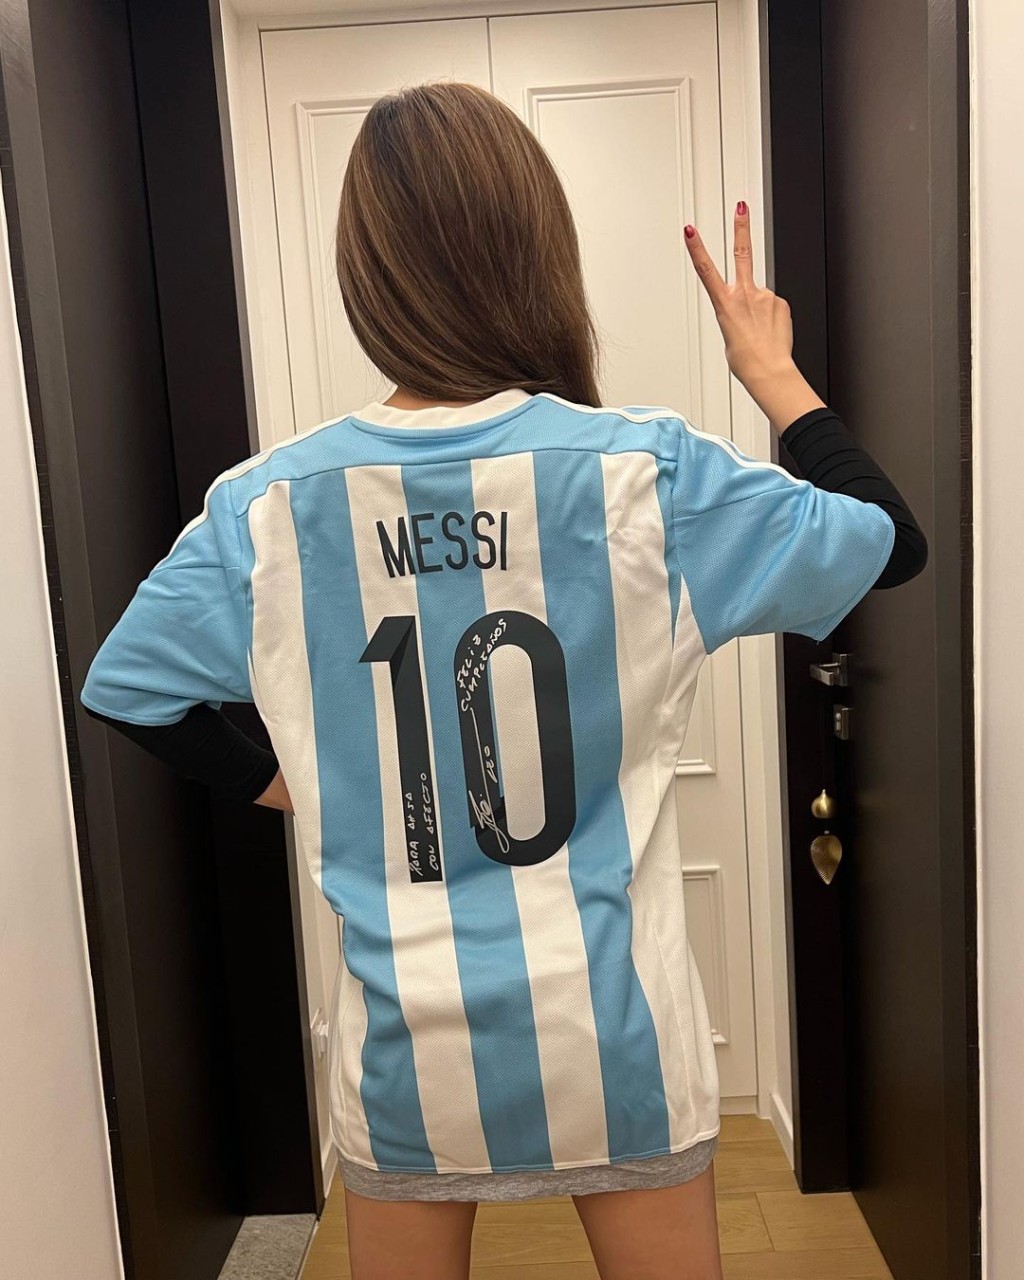 她更穿上该球衣力撑阿根廷。蔡卓妍IG